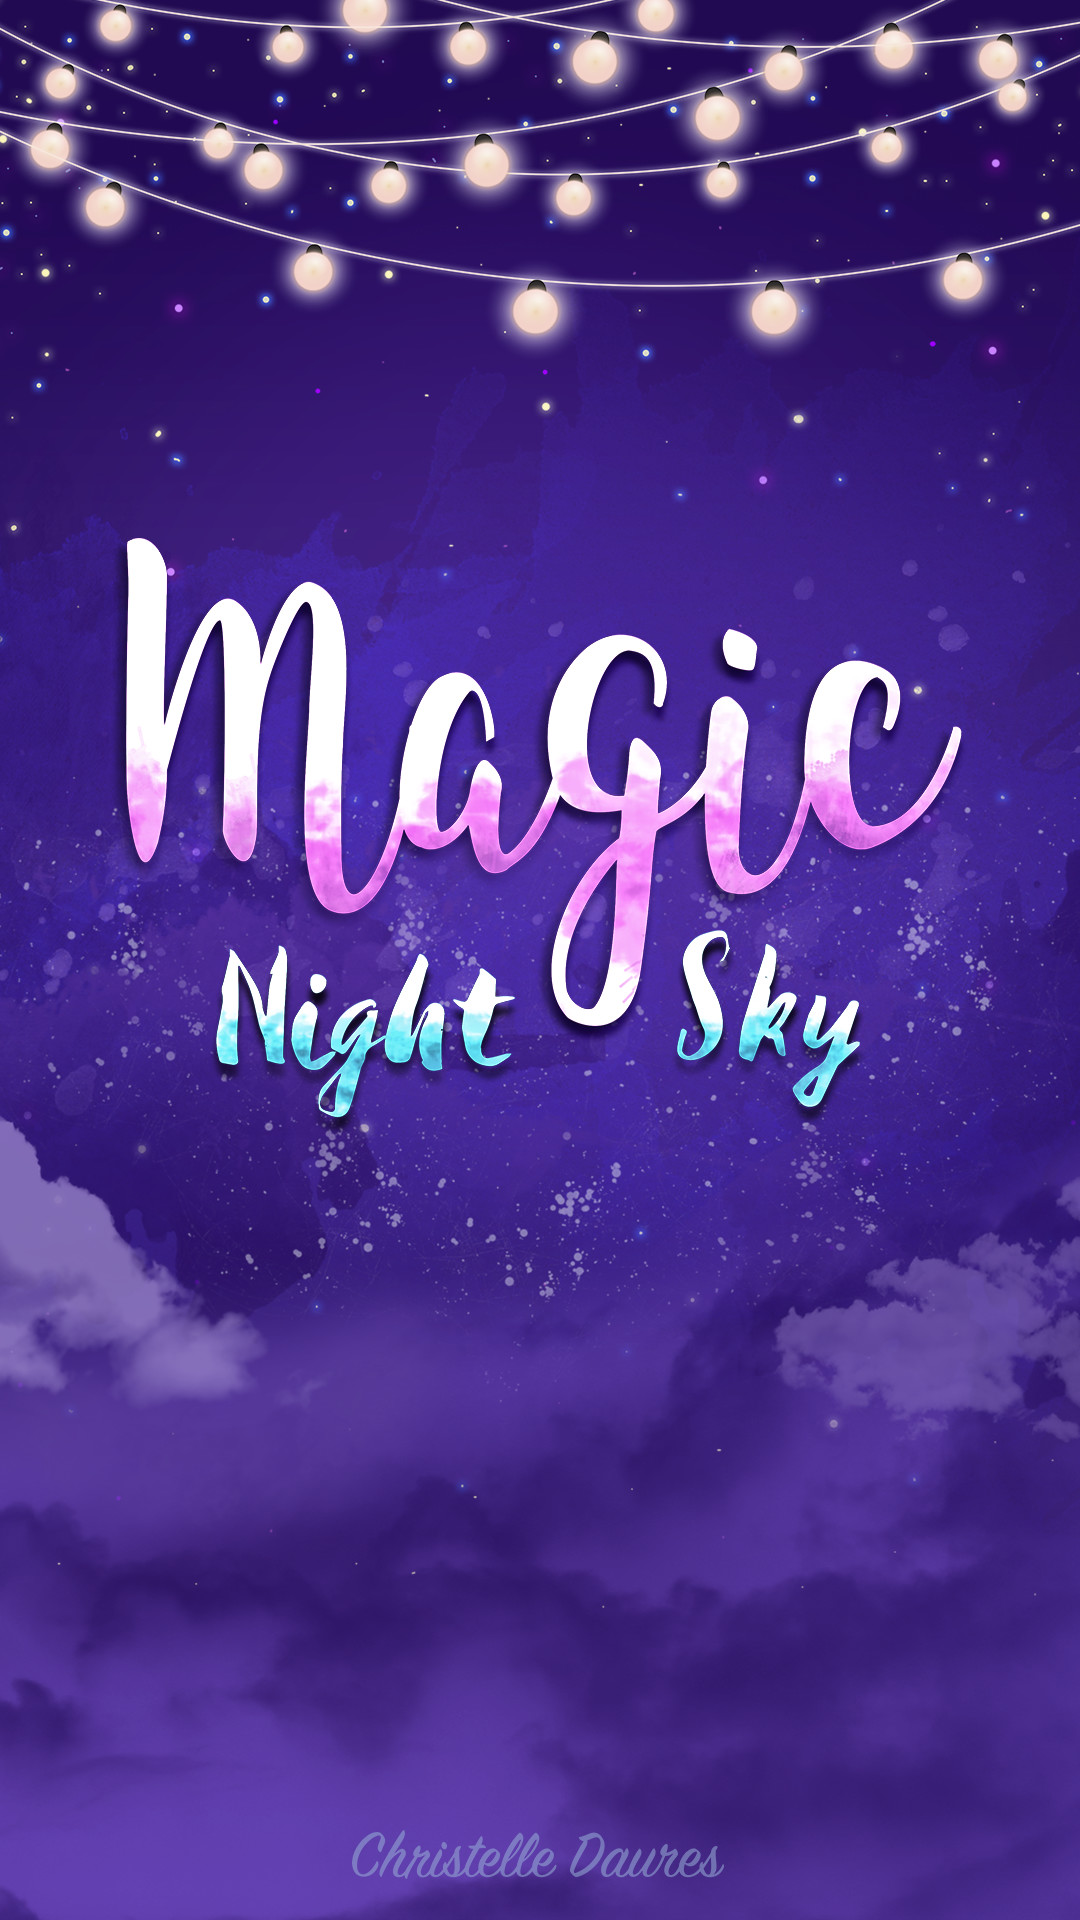 1080x1920 iphone fond ecran magic night sky crecre wallpaper ipad